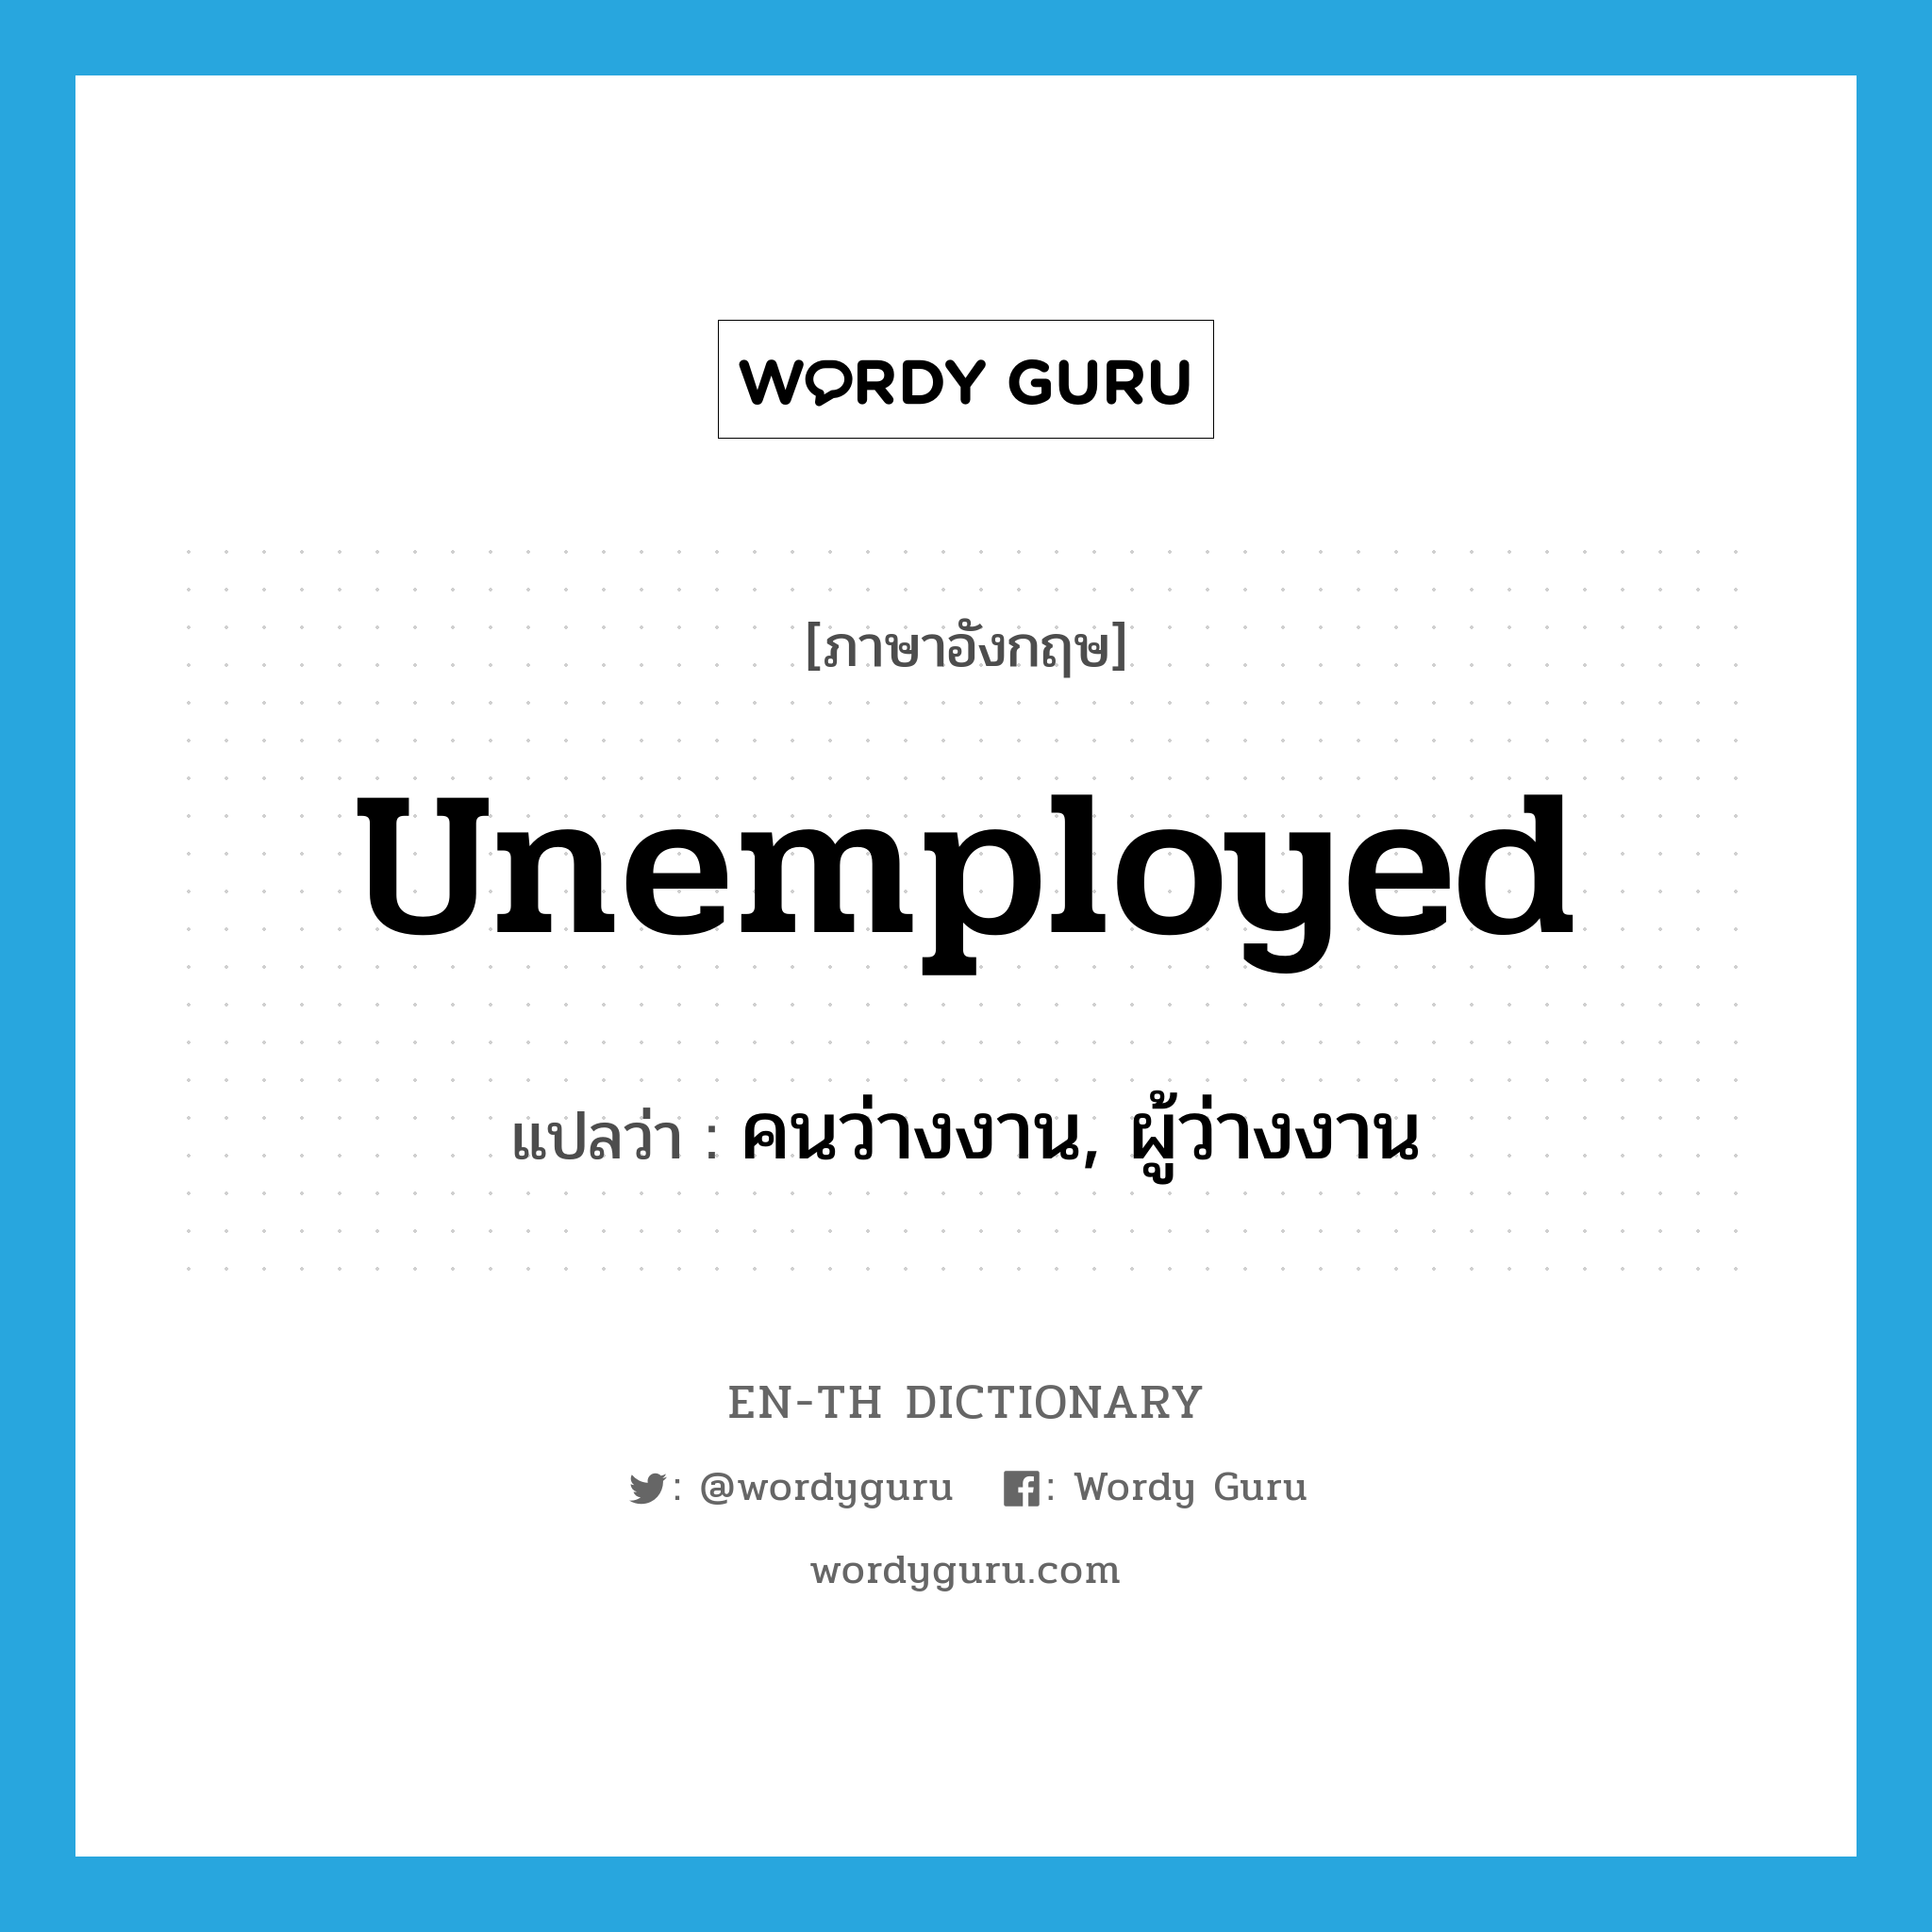 คนว่างงาน, ผู้ว่างงาน ภาษาอังกฤษ?, คำศัพท์ภาษาอังกฤษ คนว่างงาน, ผู้ว่างงาน แปลว่า unemployed ประเภท N หมวด N